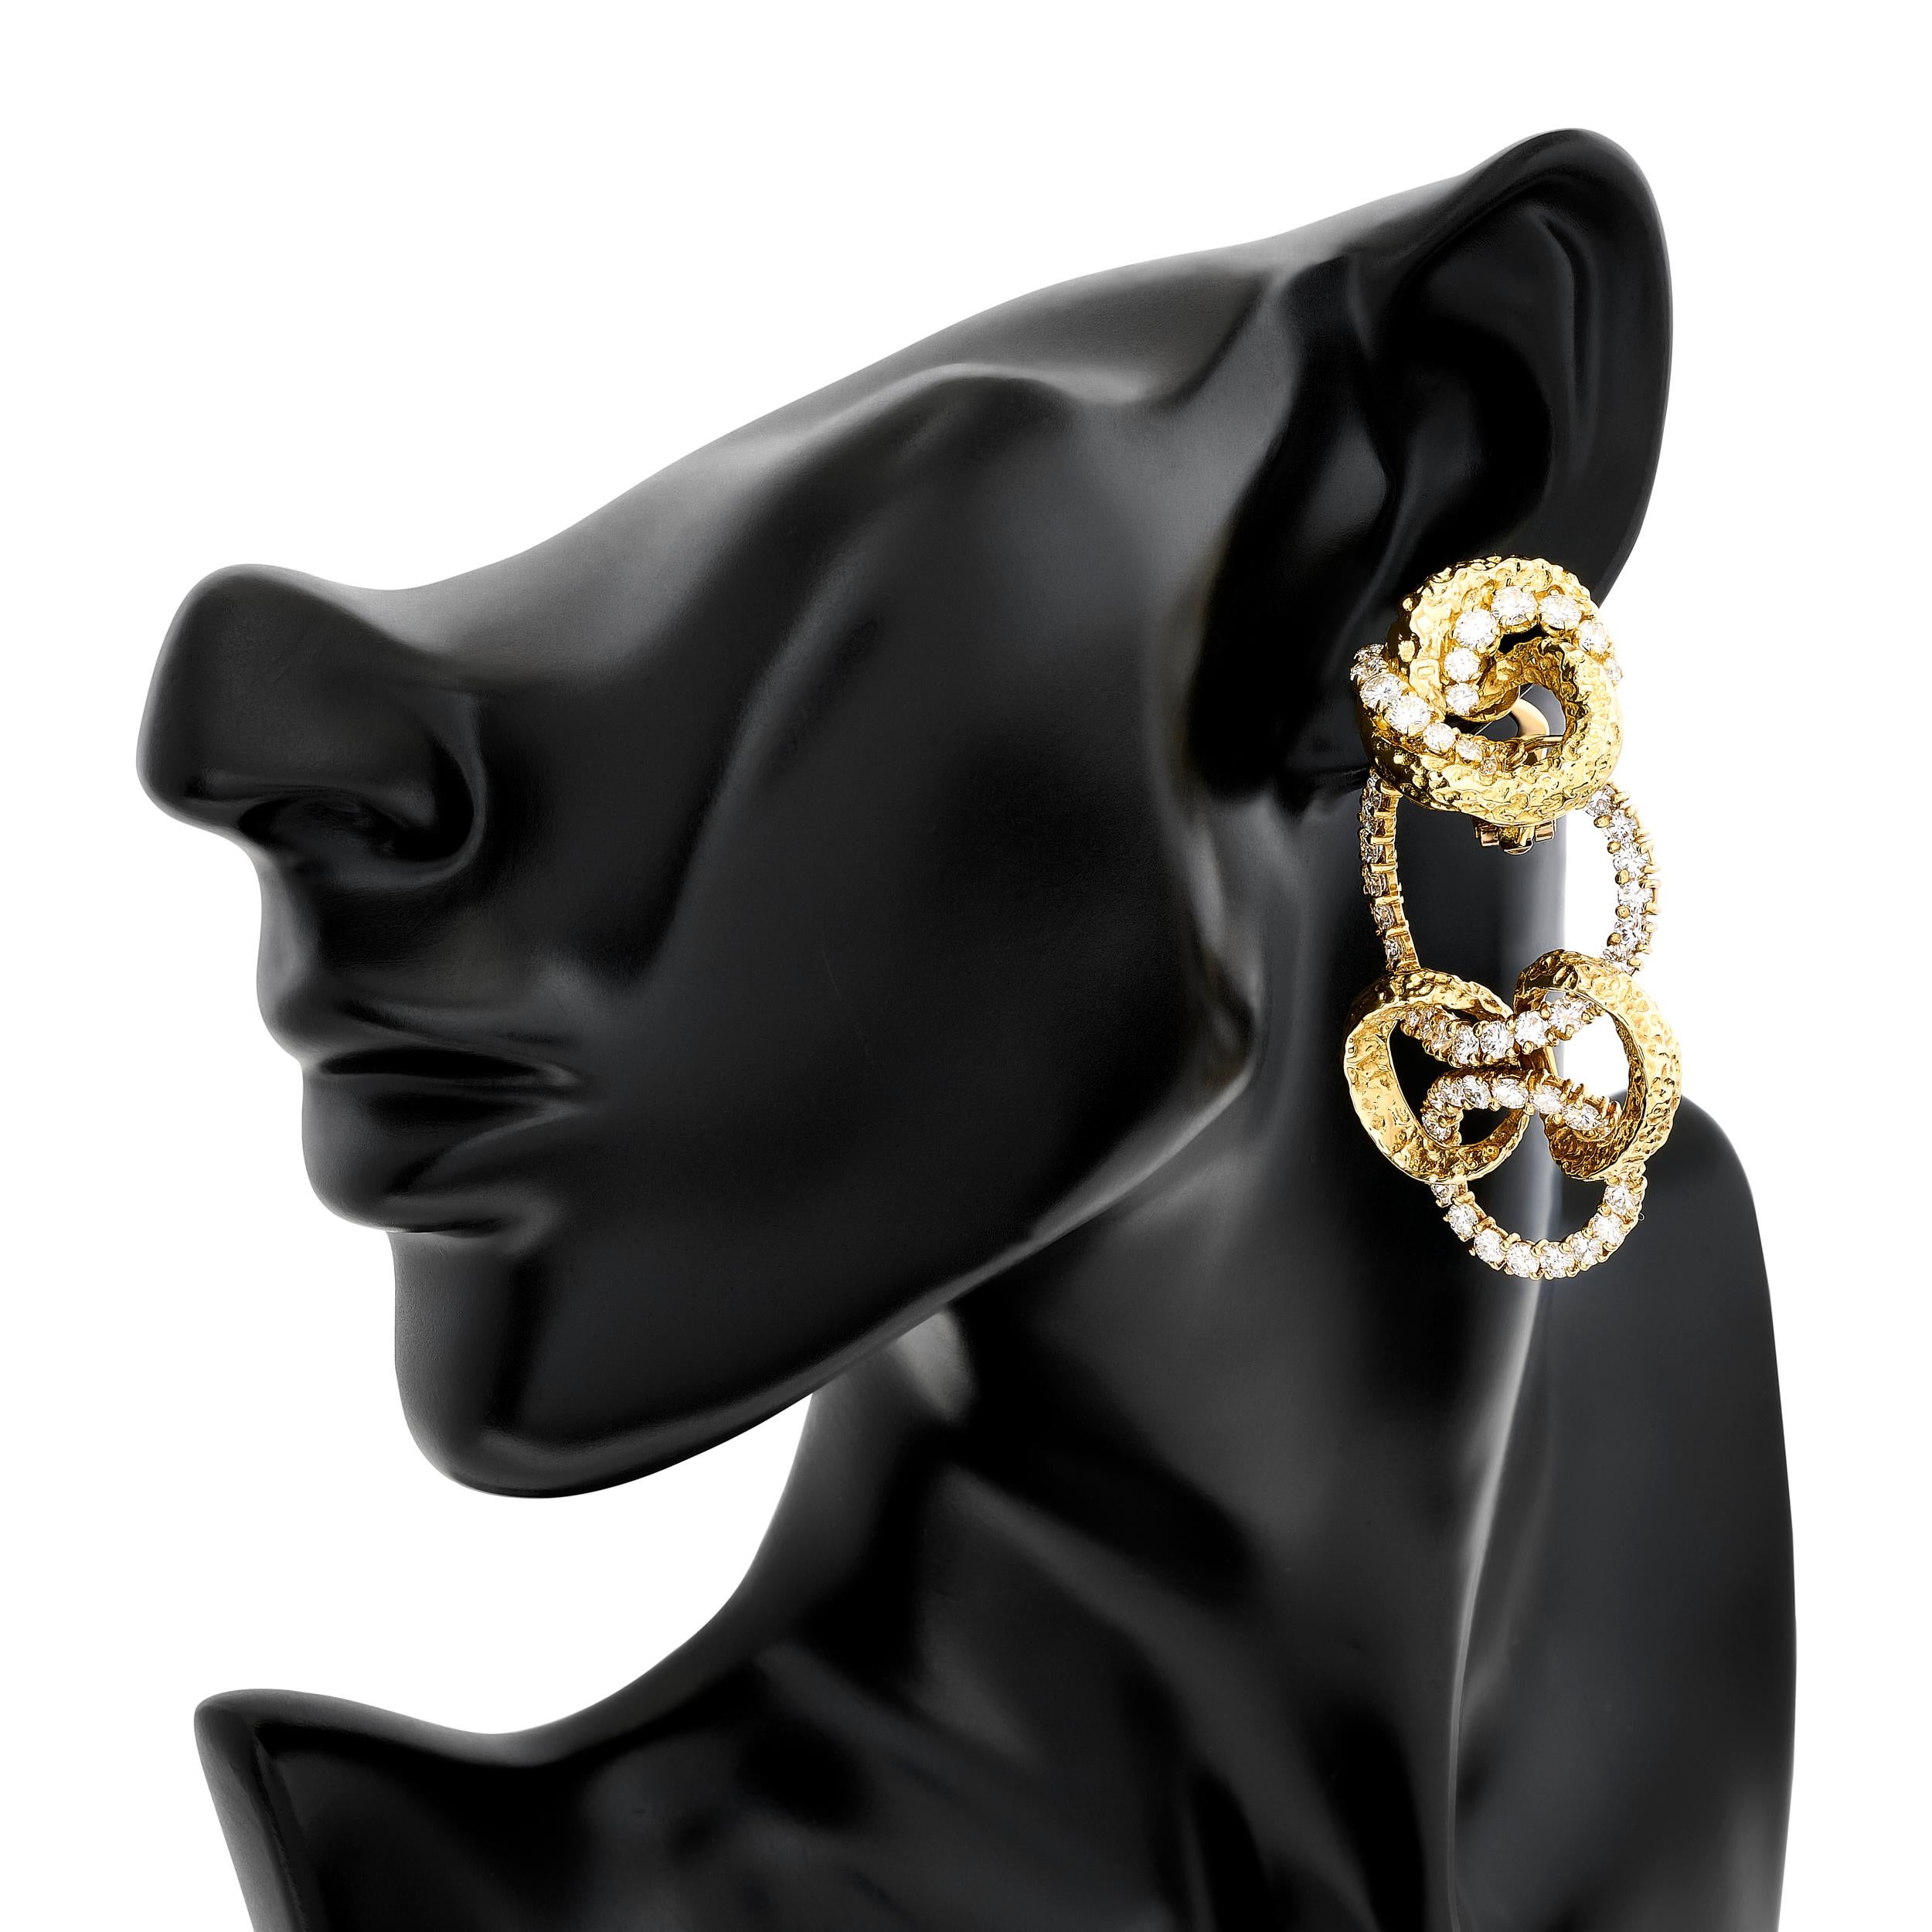 Erhöhen Sie Ihren Stil mit diesen exquisiten Ohrringen von M. Gérard. Die abnehmbaren Anhänger sind aus 18 Karat Gelbgold gefertigt und mit Diamanten besetzt, was ihnen einen Hauch von Vielseitigkeit verleiht. Sie lassen sich mühelos vom Tag in den